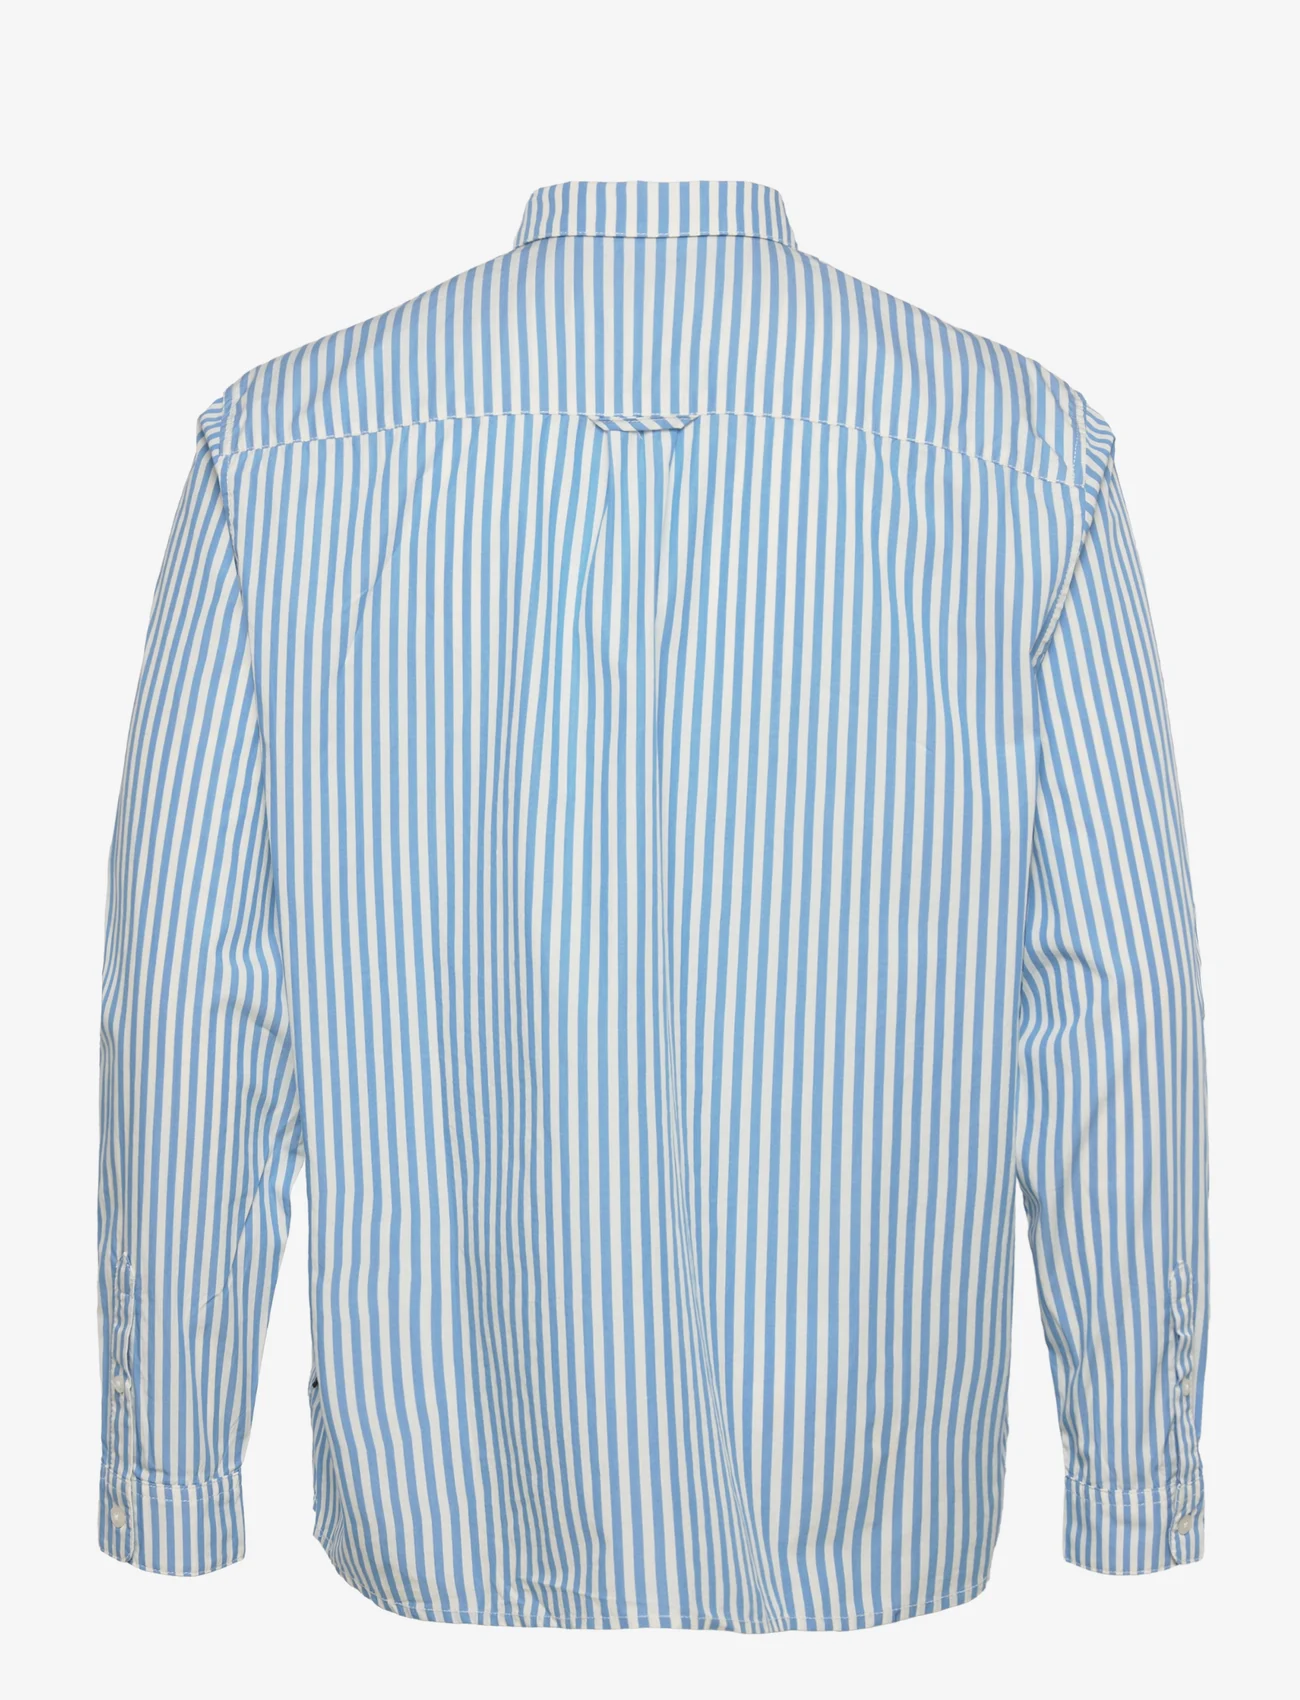 Tom Tailor - relaxed stripe shirt - casual skjortor - sky blue off white stripe - 1